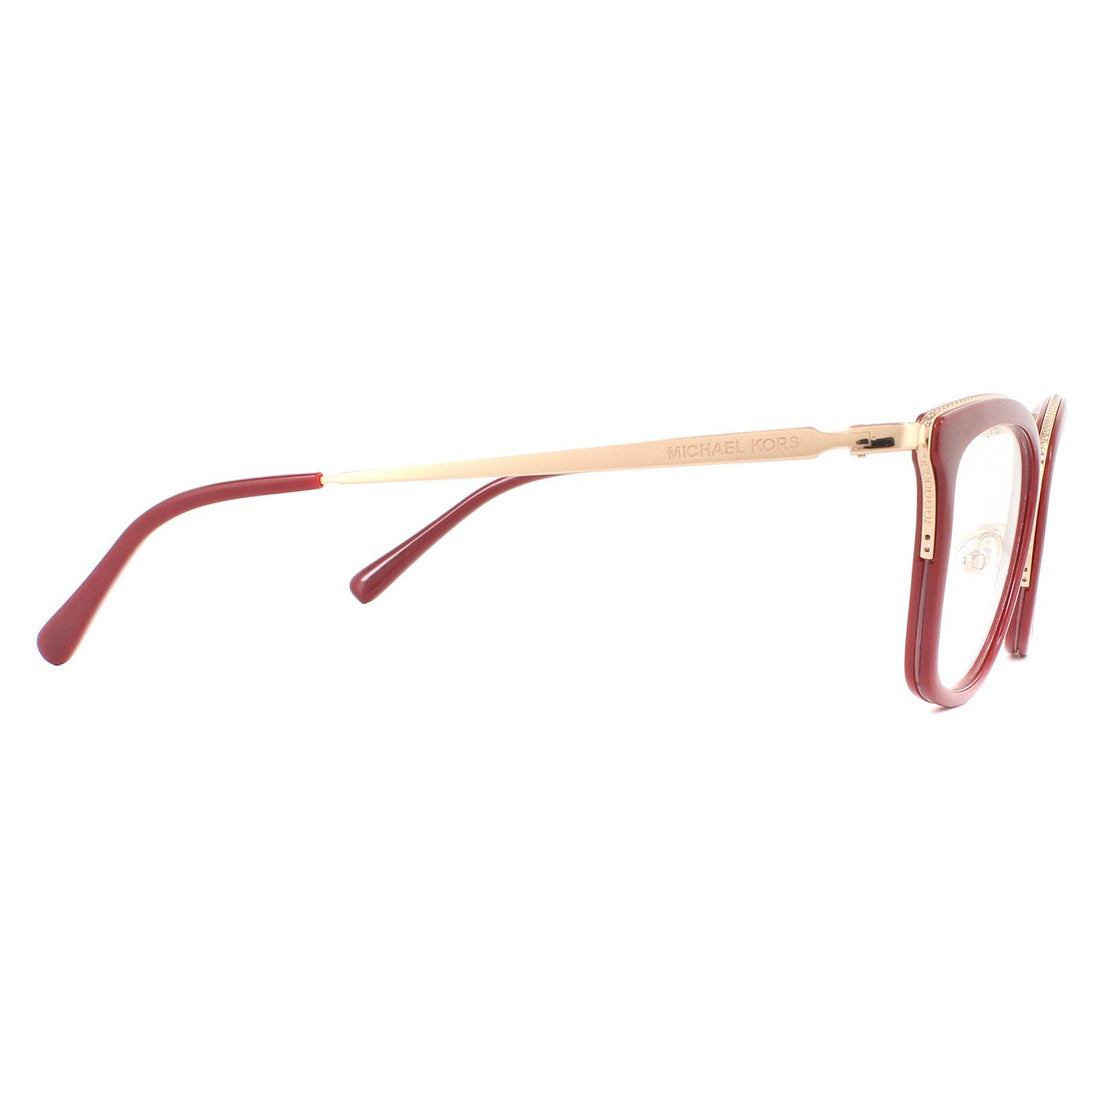 Michael Kors Glasses Frames Coconut Grove MK3032 1108 Rose Gold Red Women